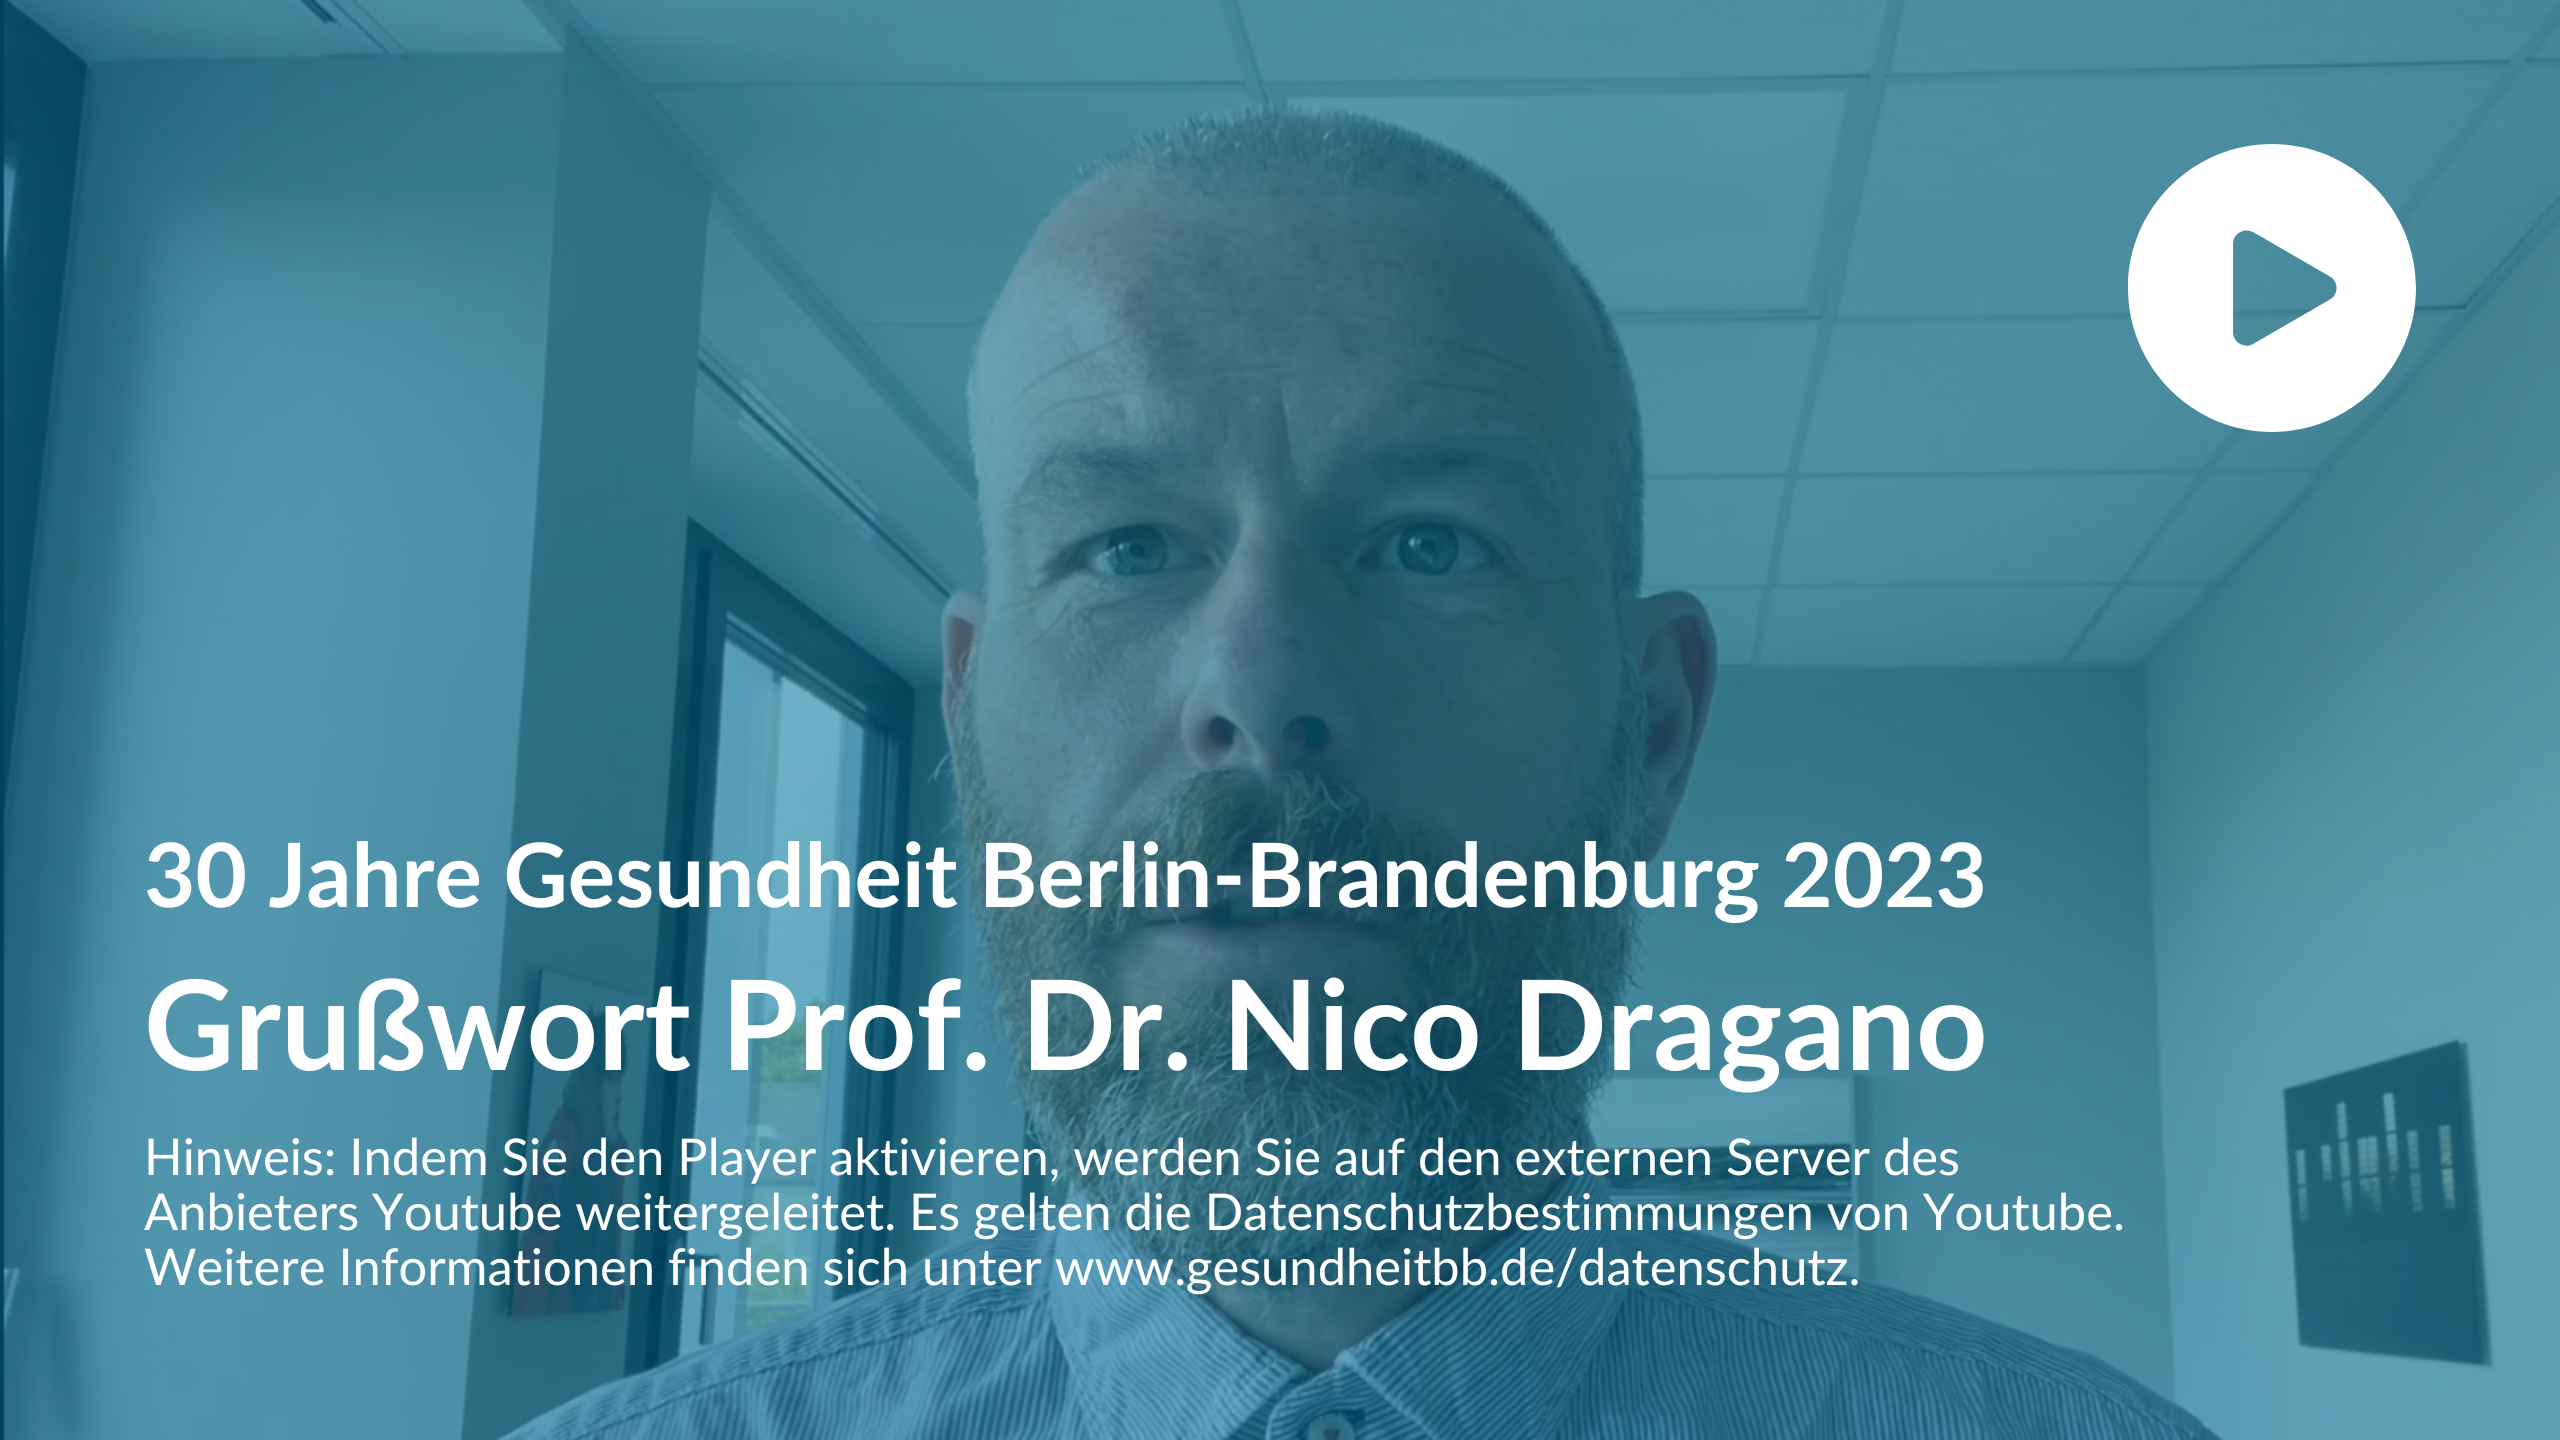 Voransicht Youtube-Video Prof. Dr. Nico Dragano